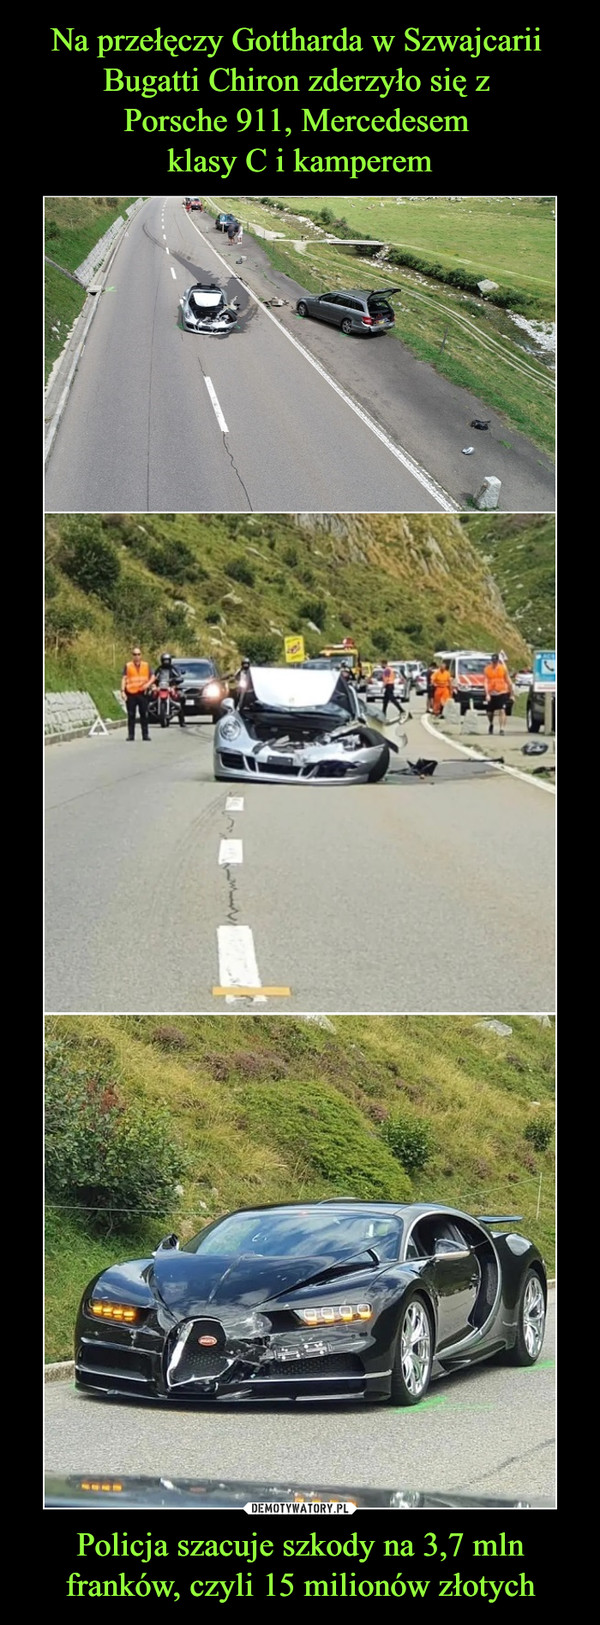 Na przełęczy Gottharda w Szwajcarii 
Bugatti Chiron zderzyło się z 
Porsche 911, Mercedesem 
klasy C i kamperem Policja szacuje szkody na 3,7 mln franków, czyli 15 milionów złotych